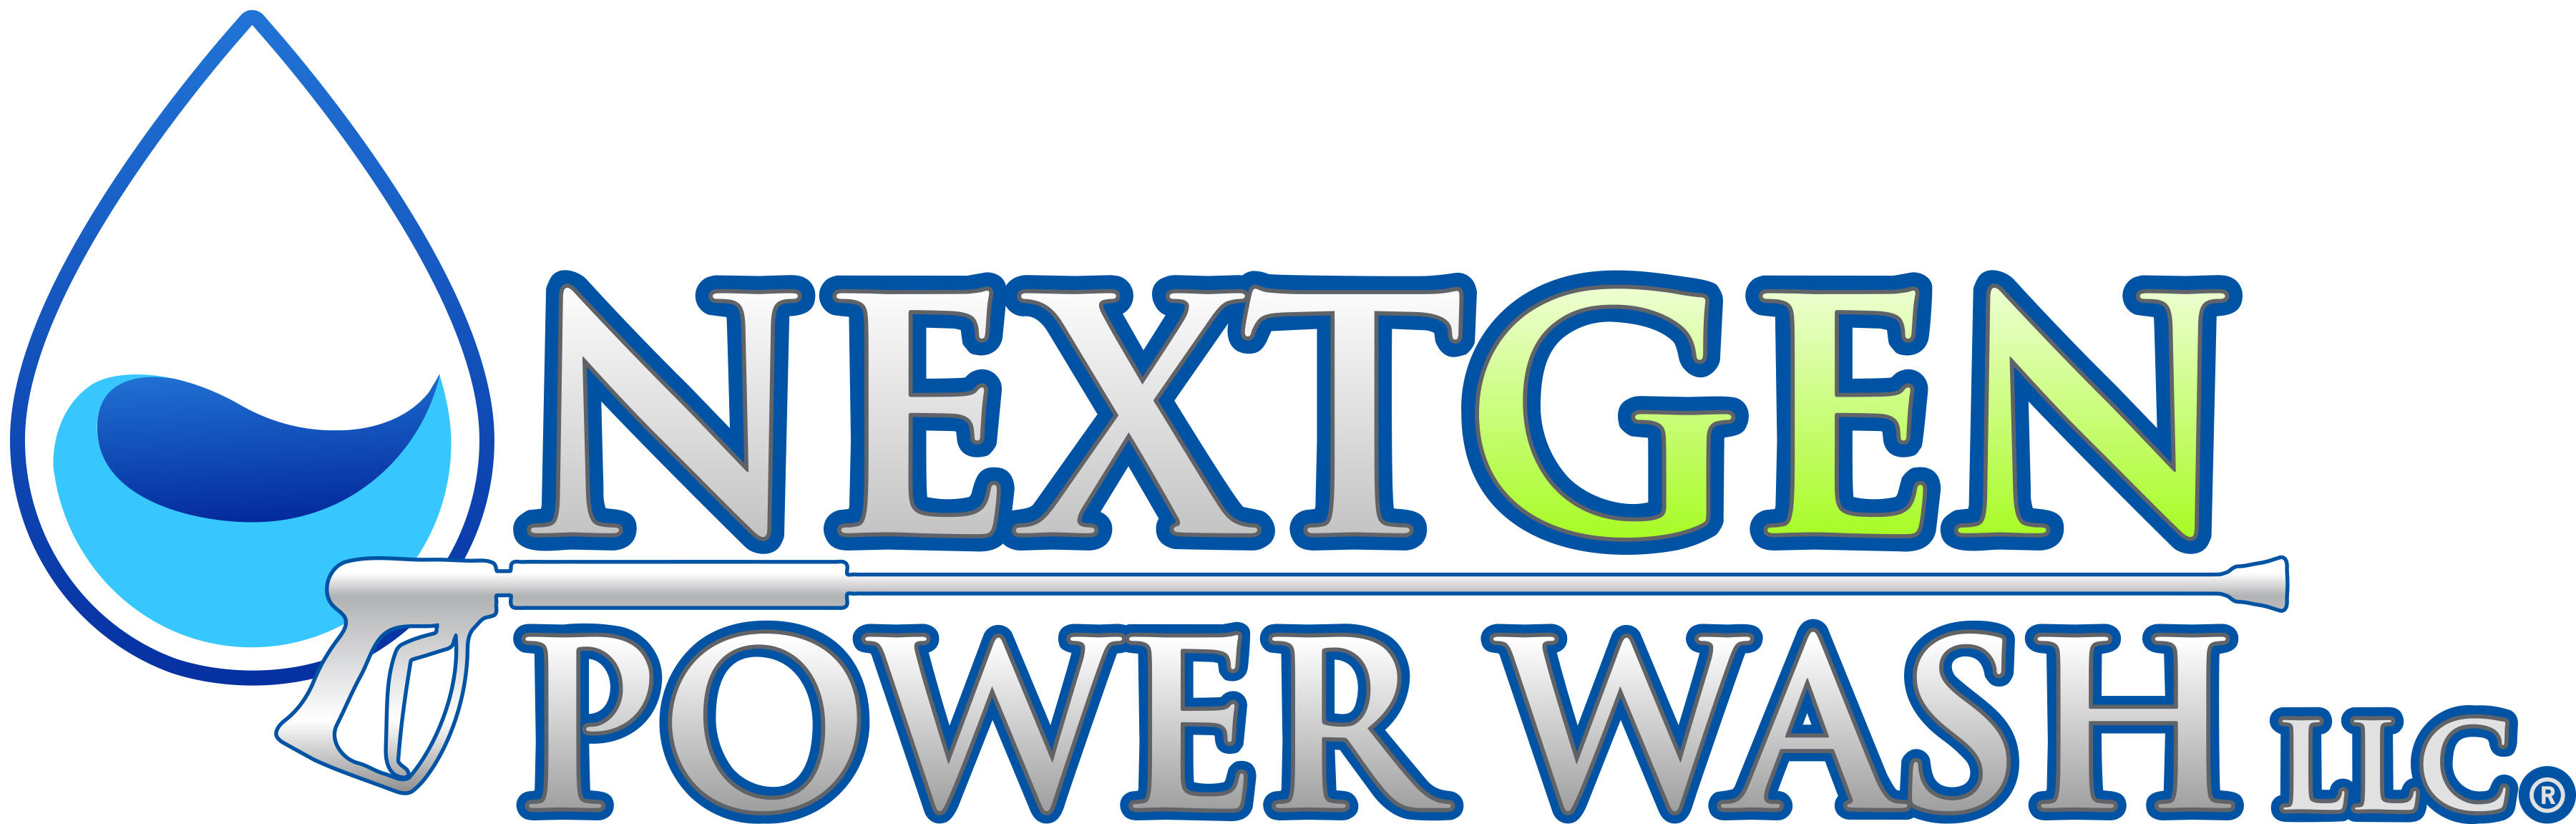 NextGen Power Washing Logo shamokin dam Pennsylvania